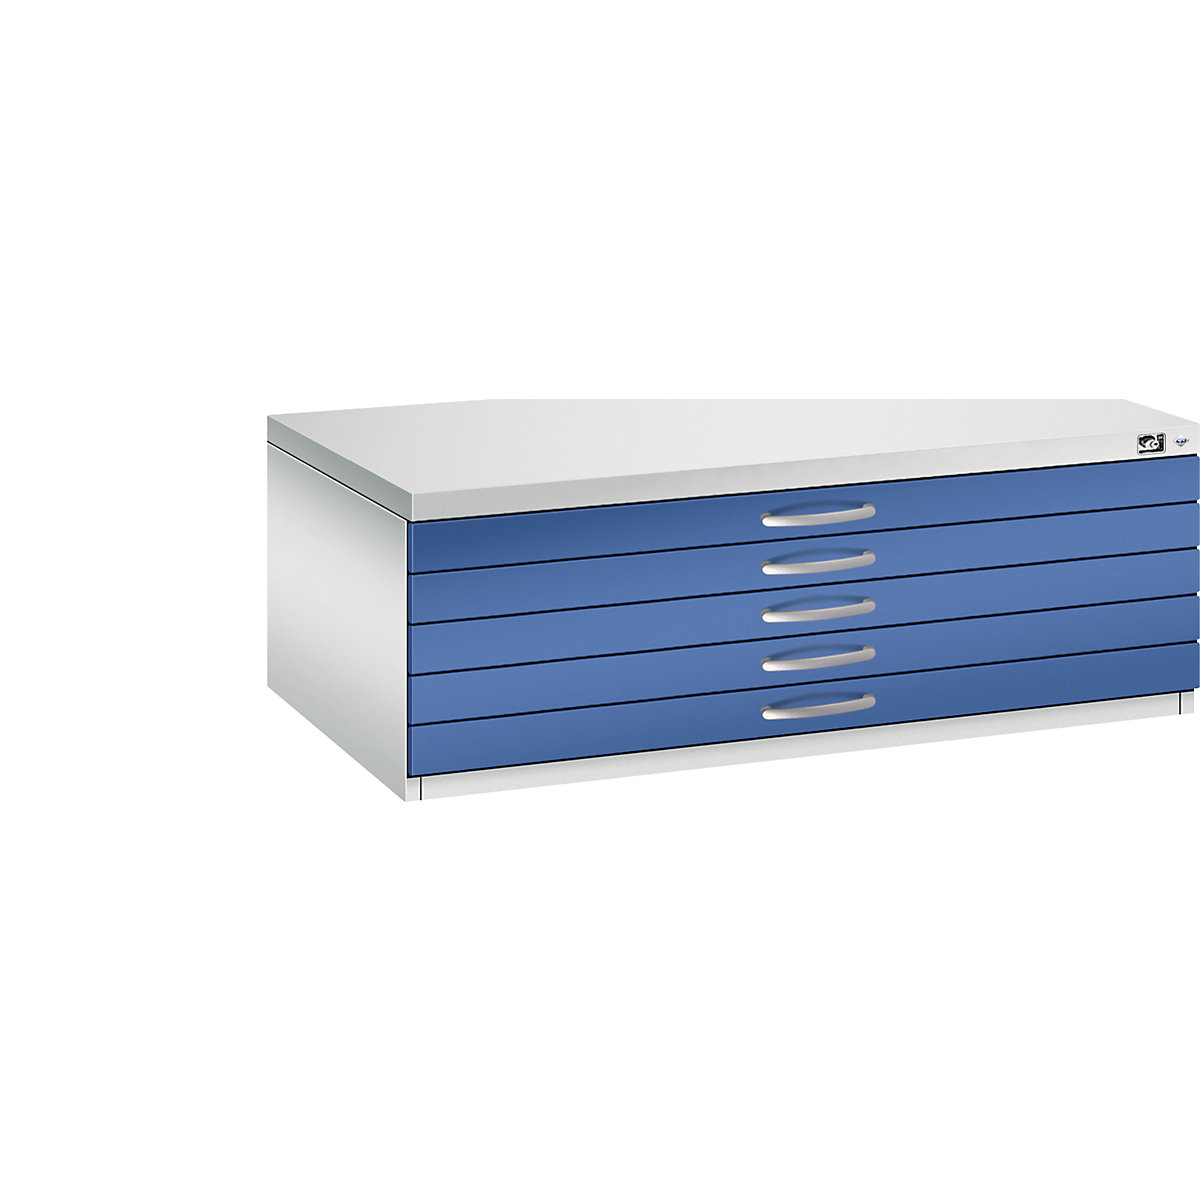 C+P Zeichnungsschrank, DIN A1, 5 Schubladen, Höhe 420 mm, lichtgrau / enzianblau